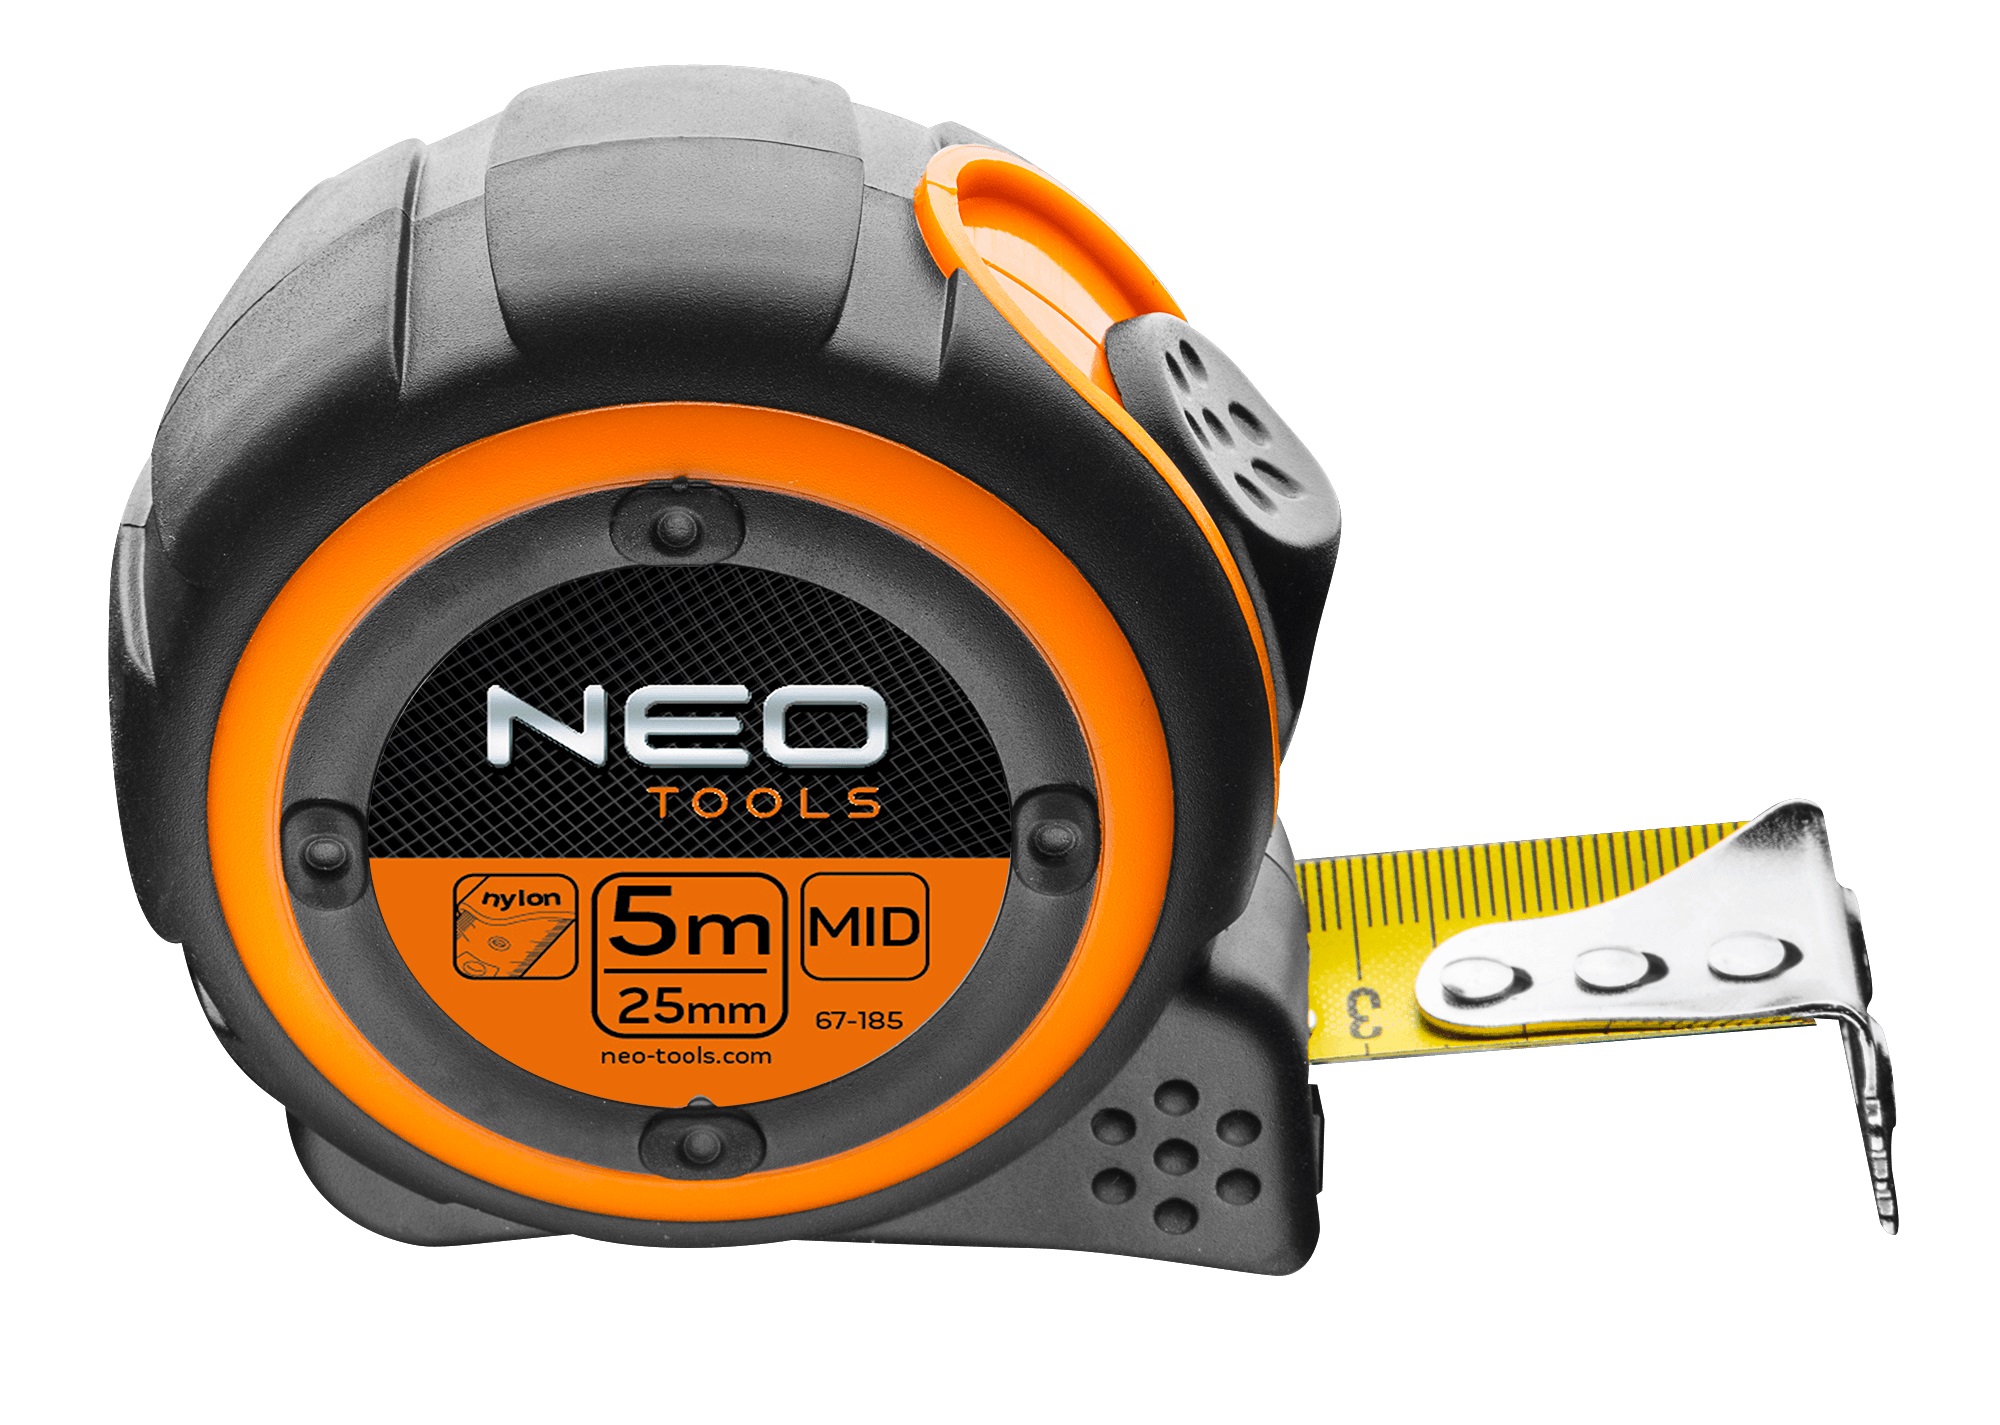 Характеристики рулетка Neo Tools 67-185